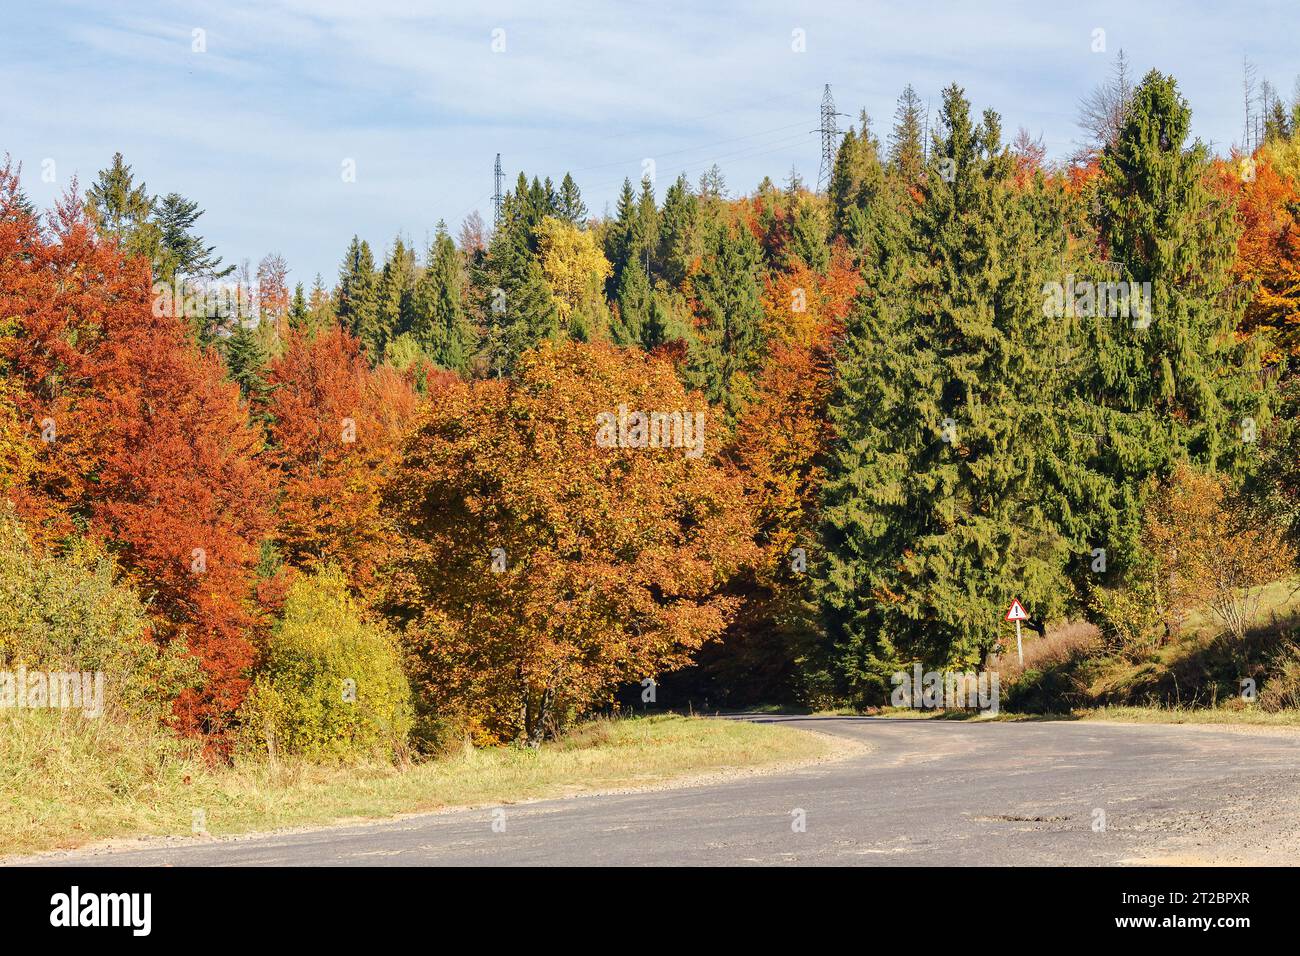 Straße durch bewaldete Landschaft im Herbst. Bäume in Herbstfarben. Bergige ländliche Gegend an einem sonnigen Tag Stockfoto